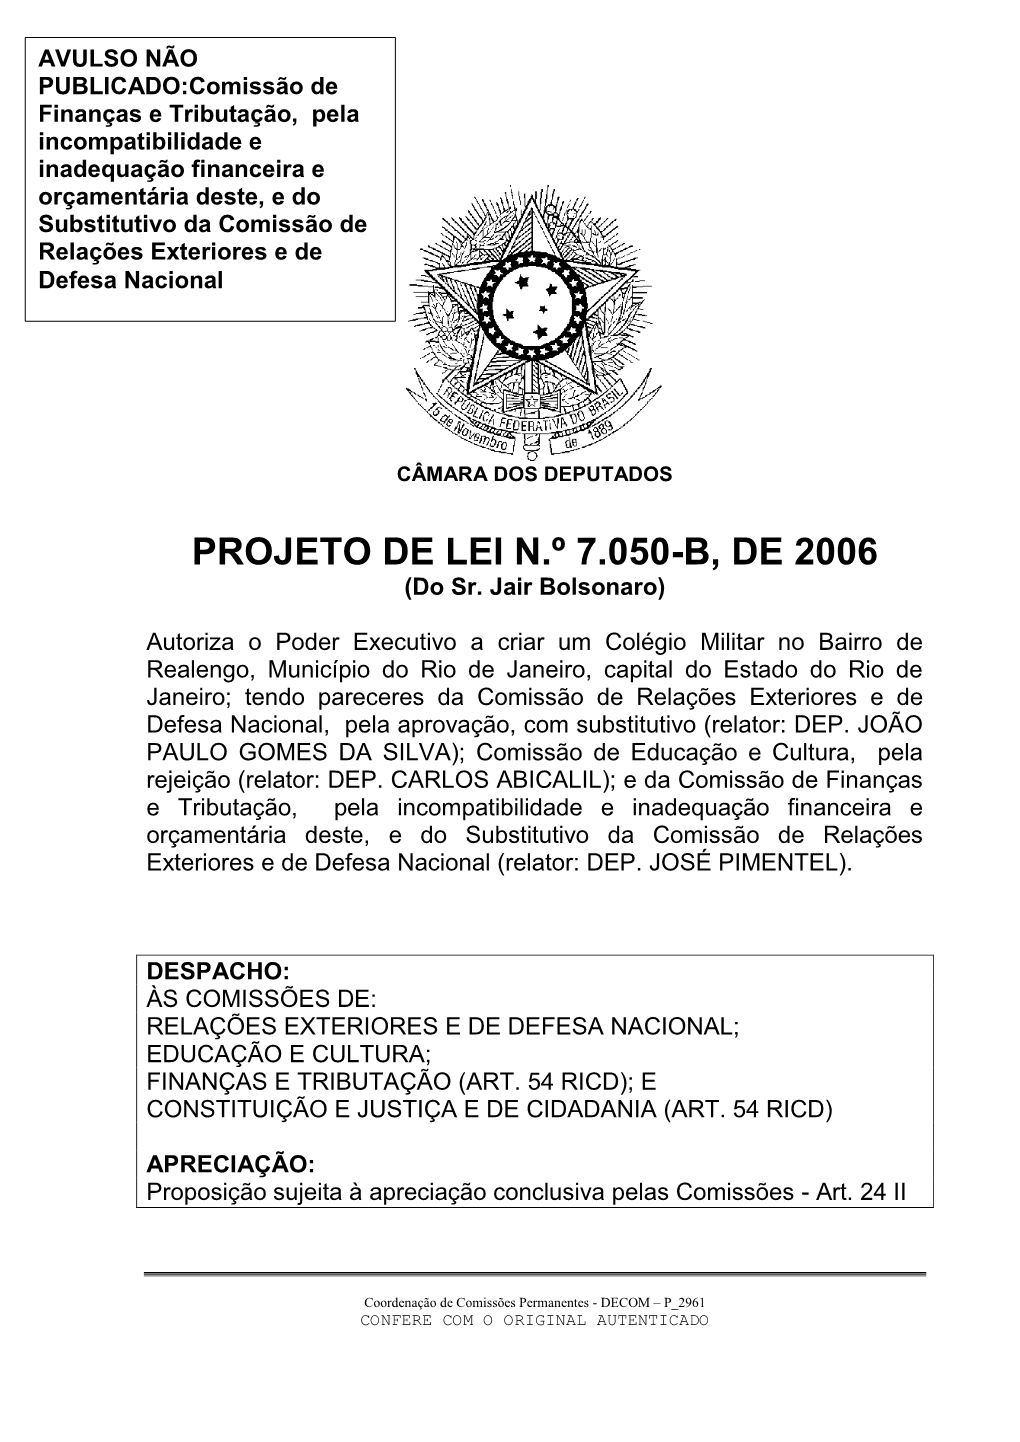 PROJETO DE LEI N.º 7.050-B, DE 2006 (Do Sr